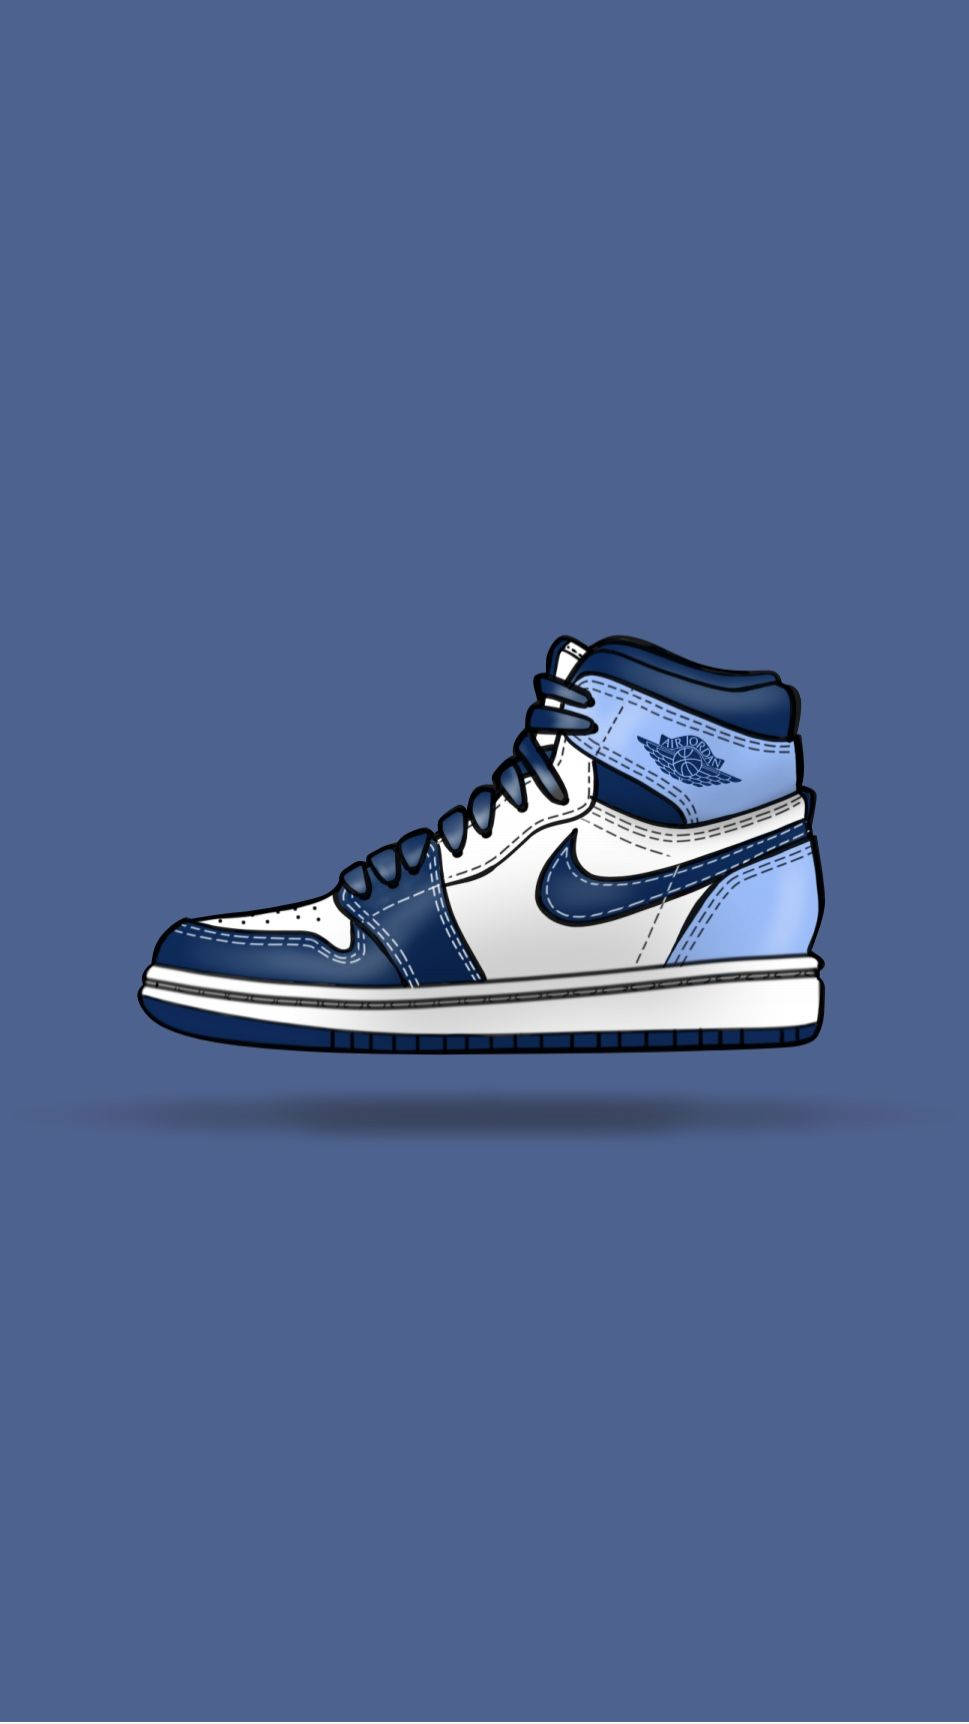 Download Nike Shoes Air Jordan Blue Wallpaper 